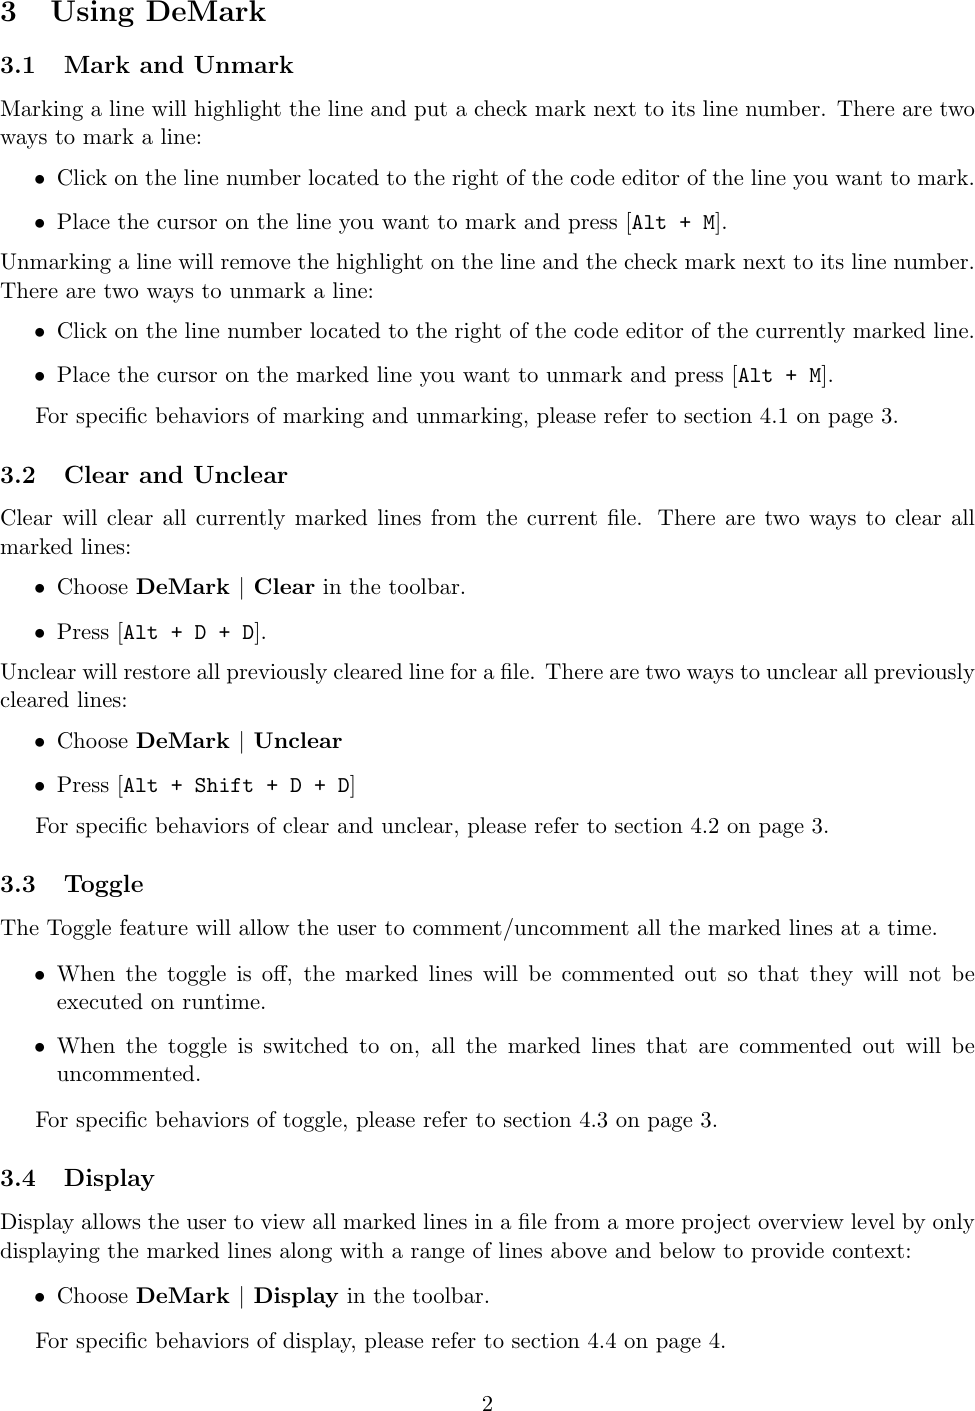 Page 2 of 4 - De Mark User Manual